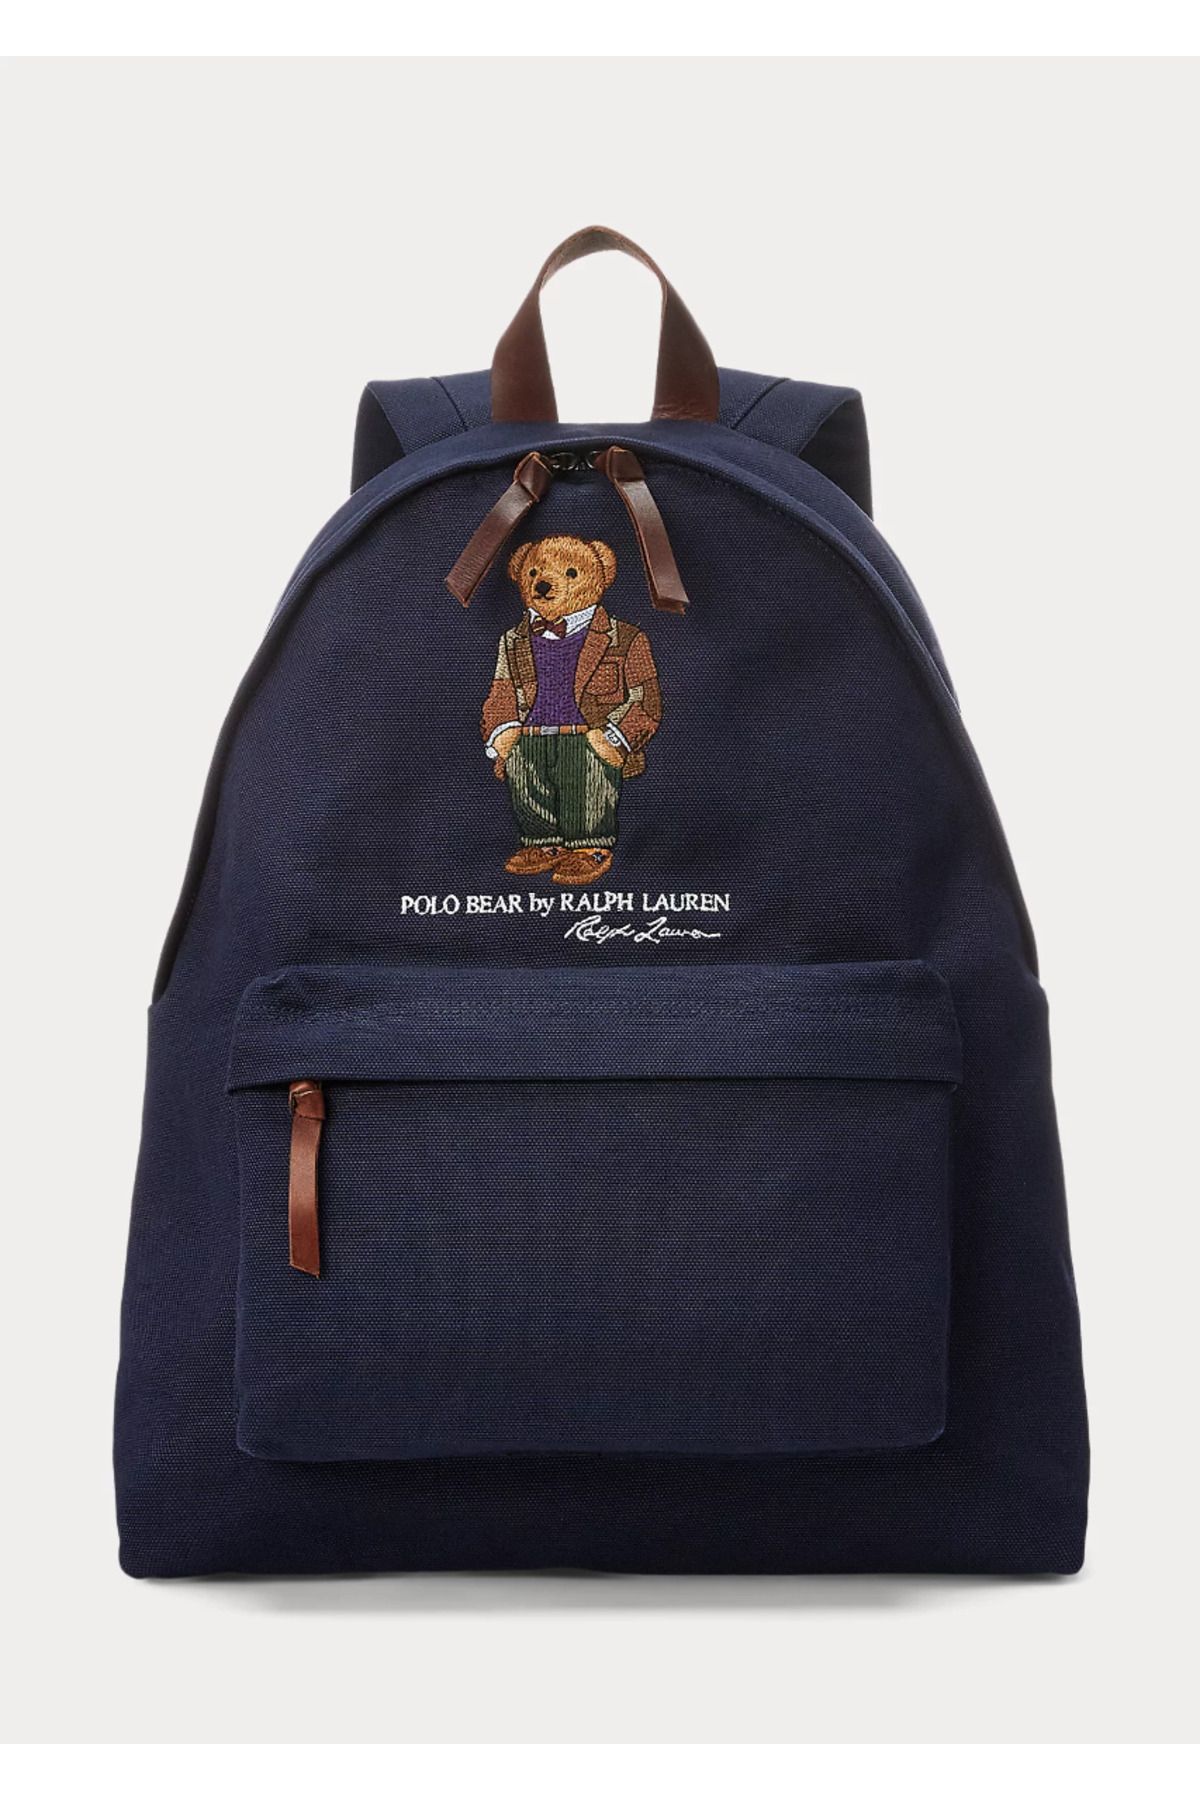 Ralph Lauren Polo Bear Canvas Backpack